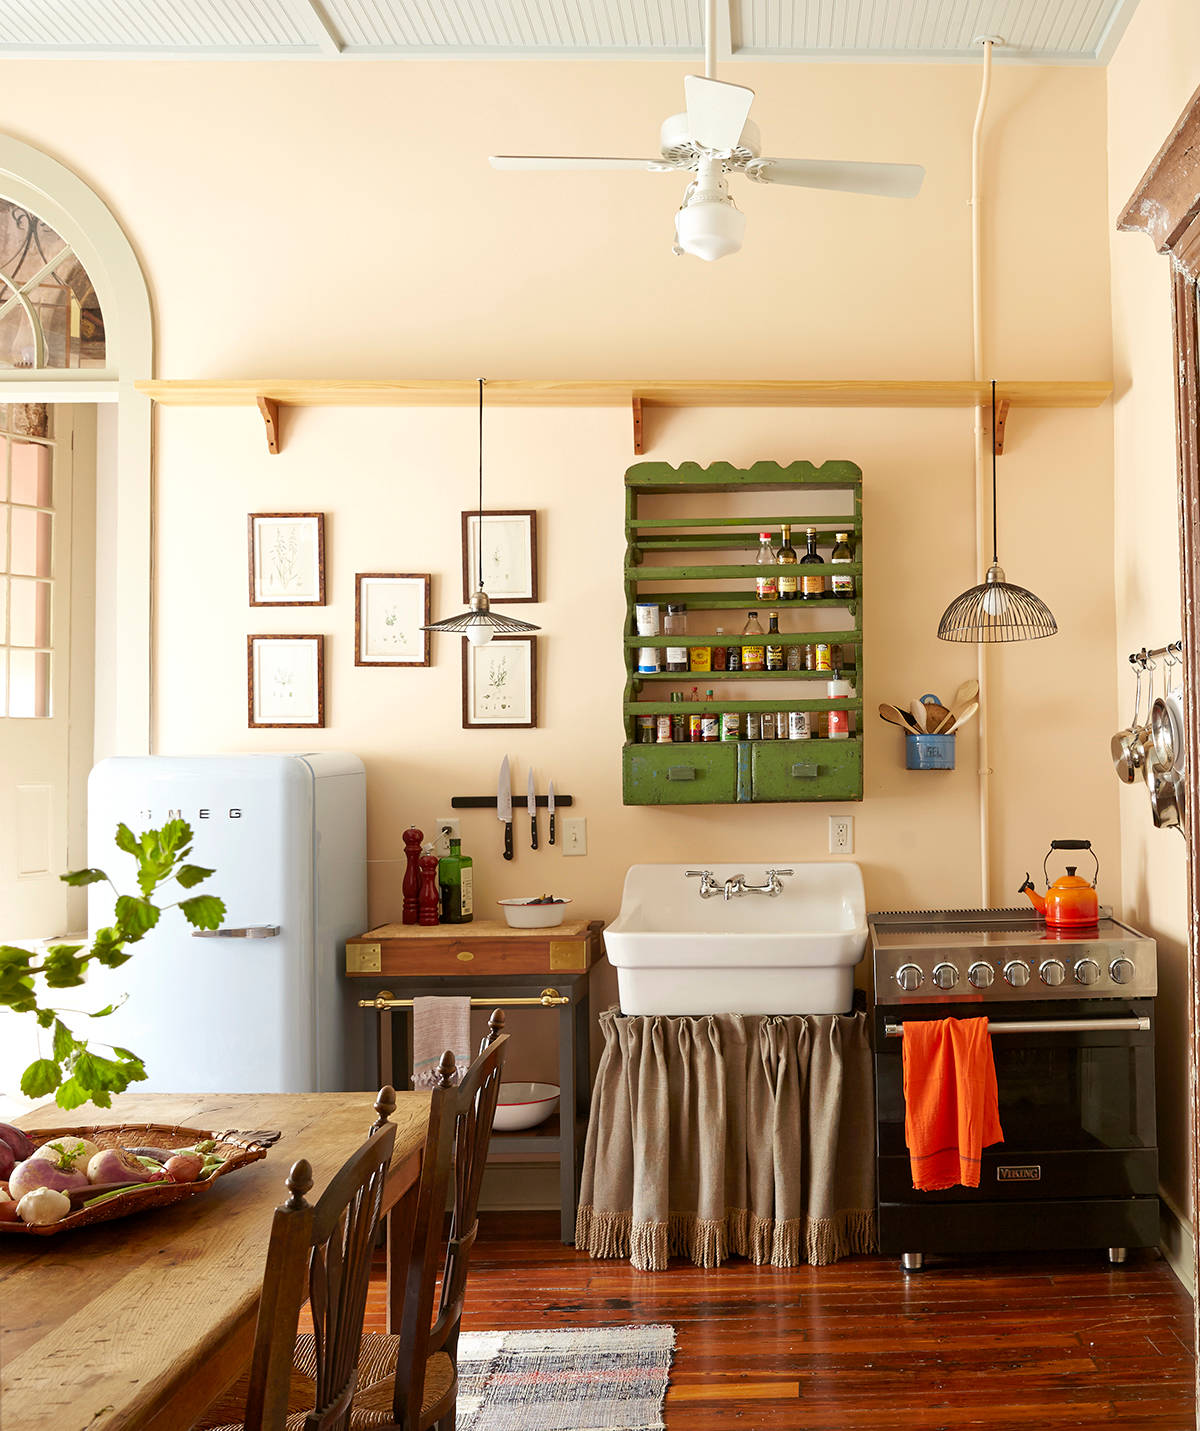 Ngắm những căn bếp nhỏ đầy màu sắc, đẹp đến mức làm xiêu lòng bất cứ ai - Ảnh 7.